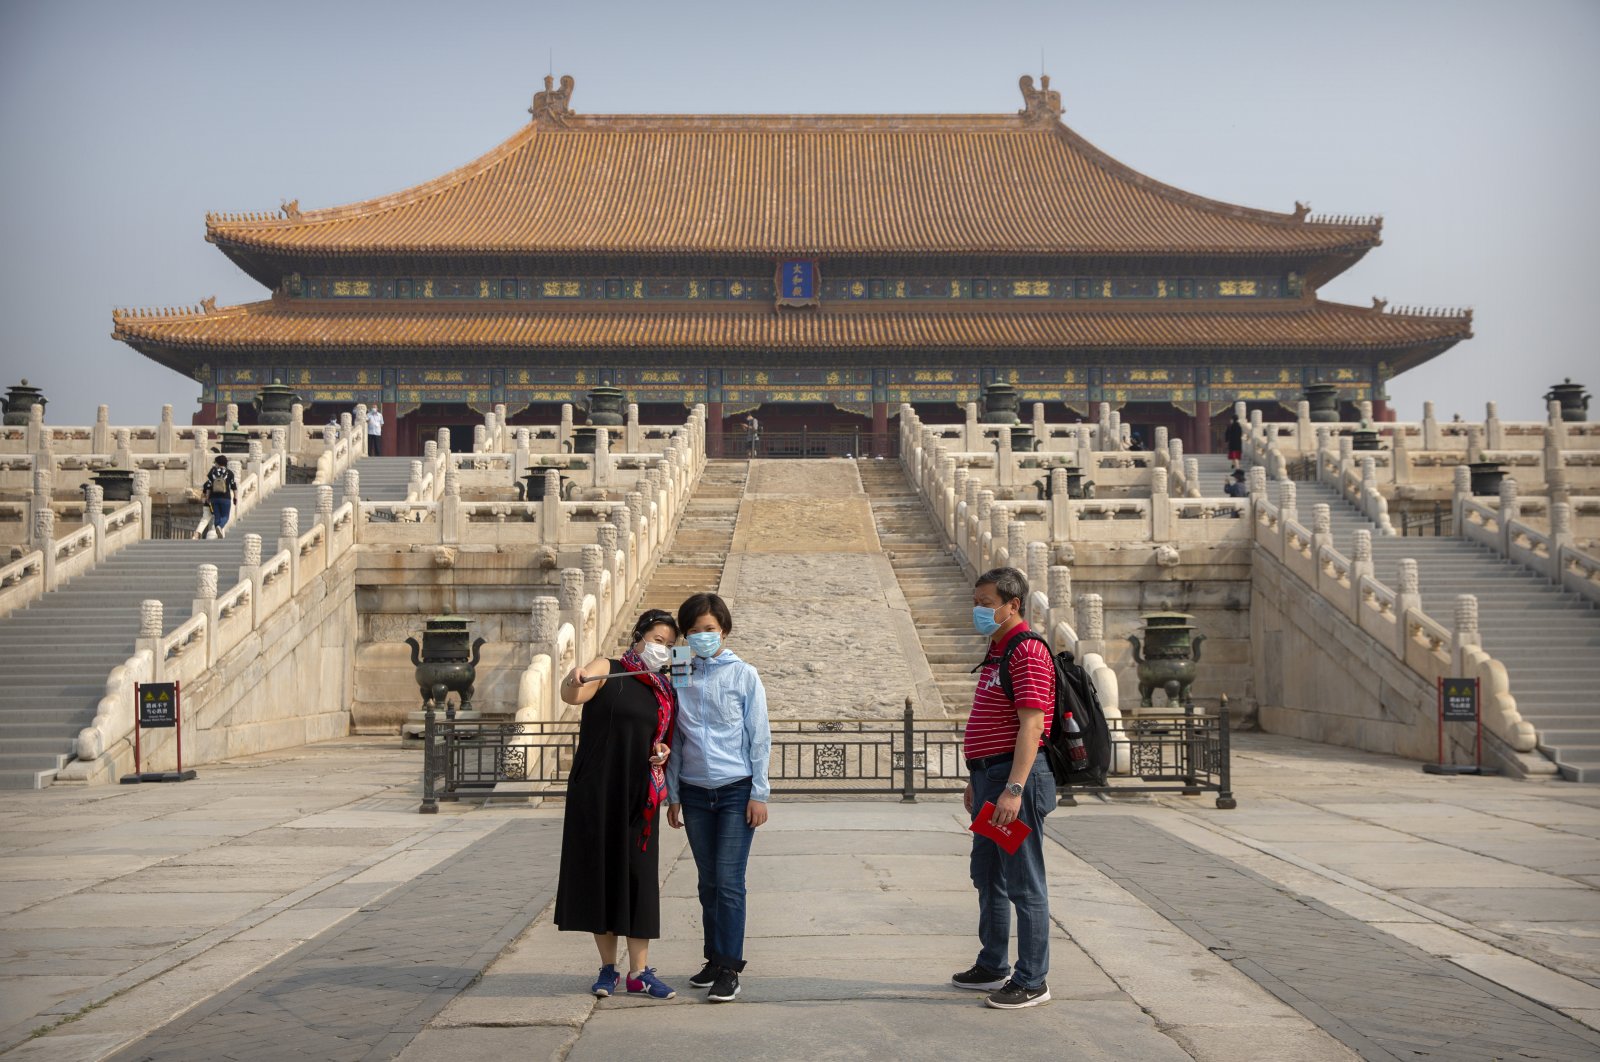 Врата небесного спокойствия в запретном городе в китае: история сооружения